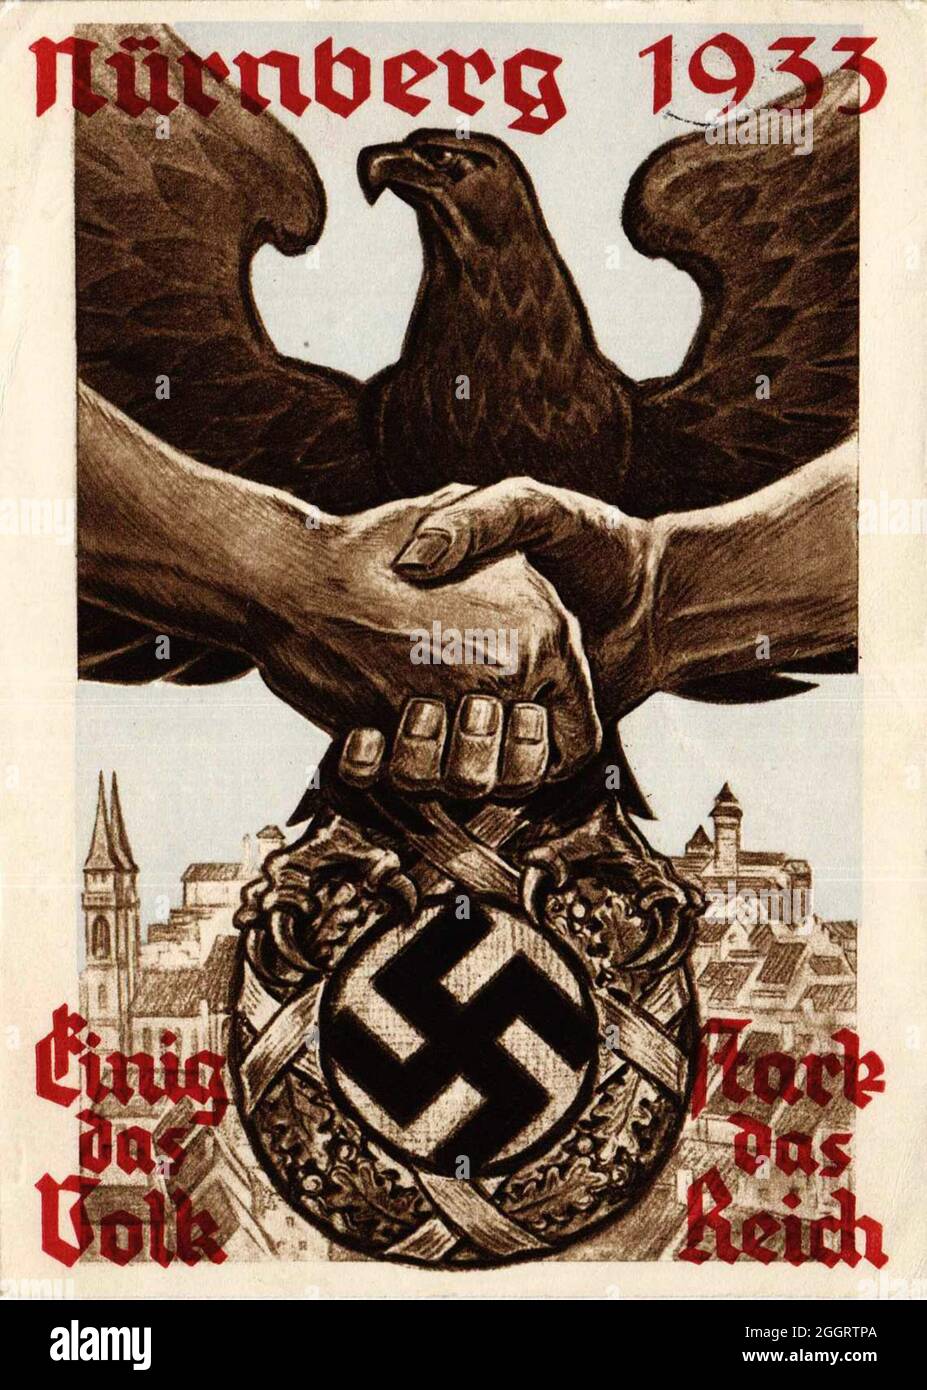 Une affiche vintage pour le rallye de Nuremberg 1933 Banque D'Images